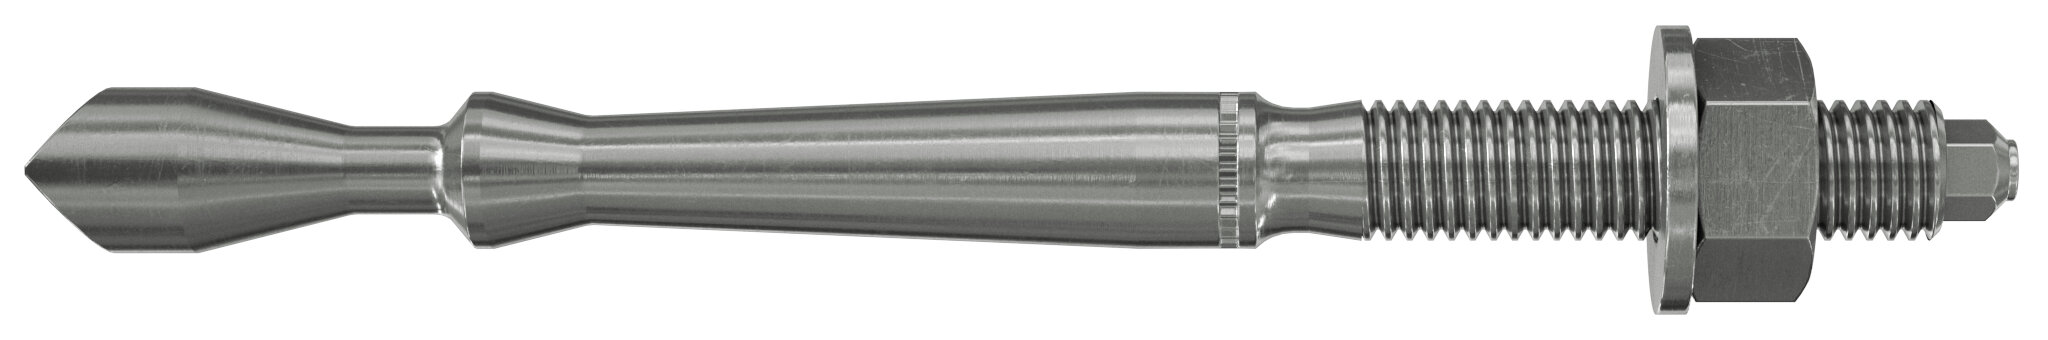 Highbond-Anker FHB II A-L C (hochkorrosionsbeständiger Stahl)